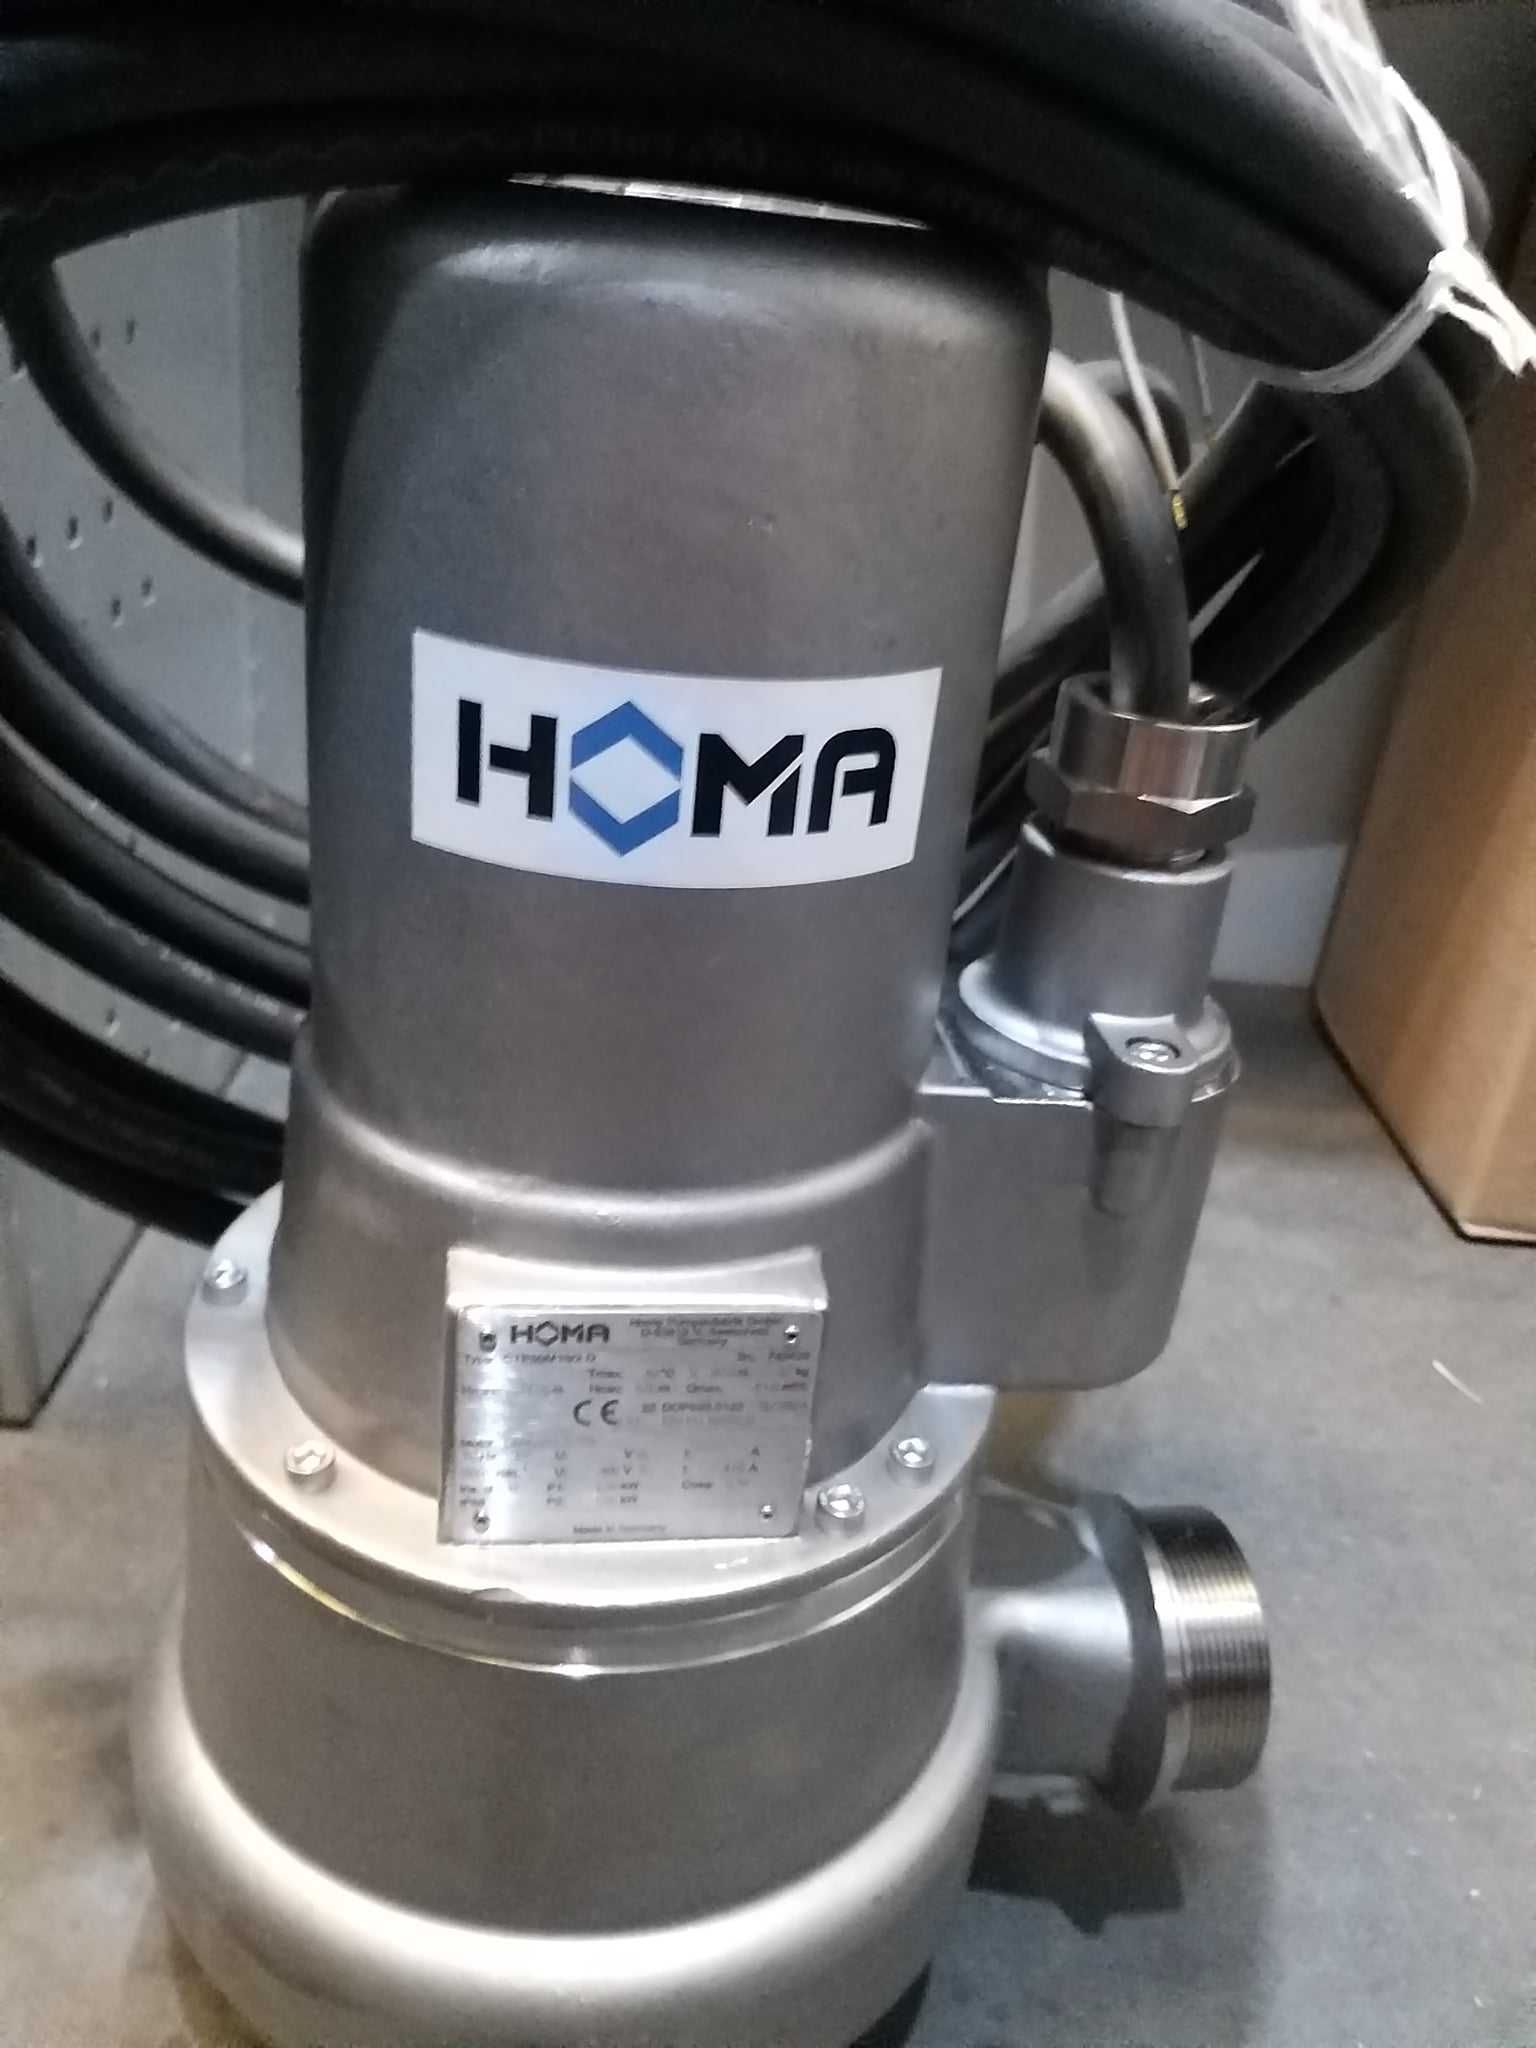 HOMA pompa CTP50M19/2D
Pompa zatapialna